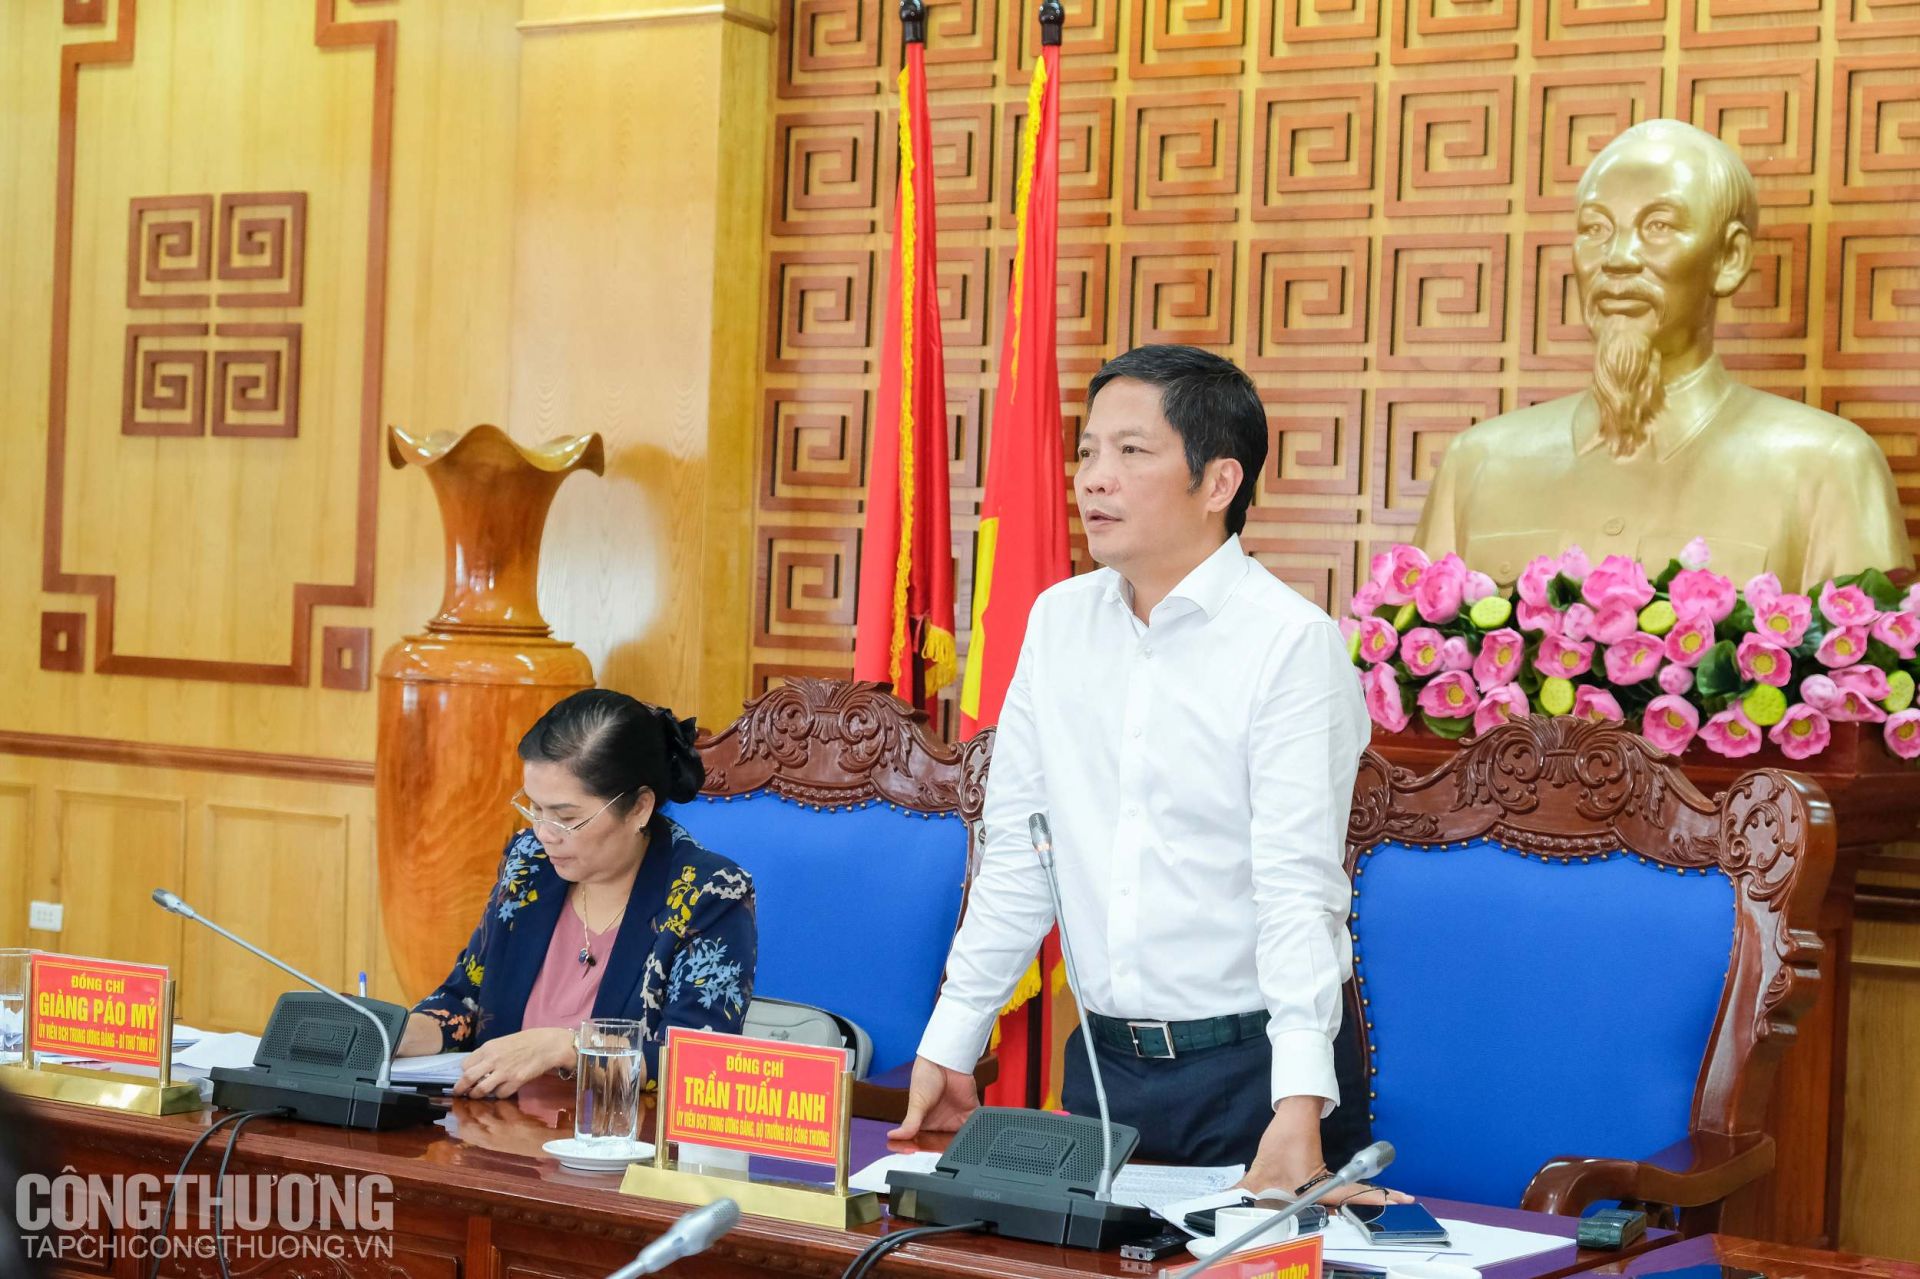 Bộ trưởng Bộ Công Thương Trần Tuấn Anh và Bí thư Tỉnh ủy Lai Châu Giàng Páo Mỷ chủ trì buổi làm việc